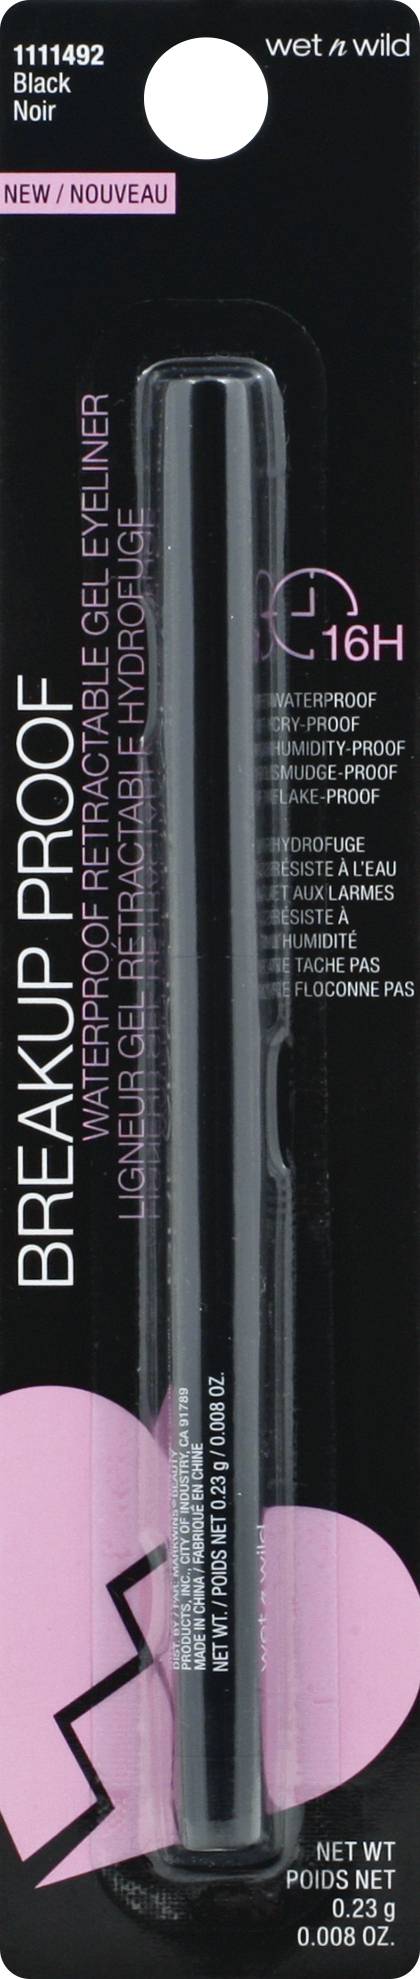 Wet N Wild Waterpoof Retractable Gel Eyeliner Black Noir 1111492 (1 ct)